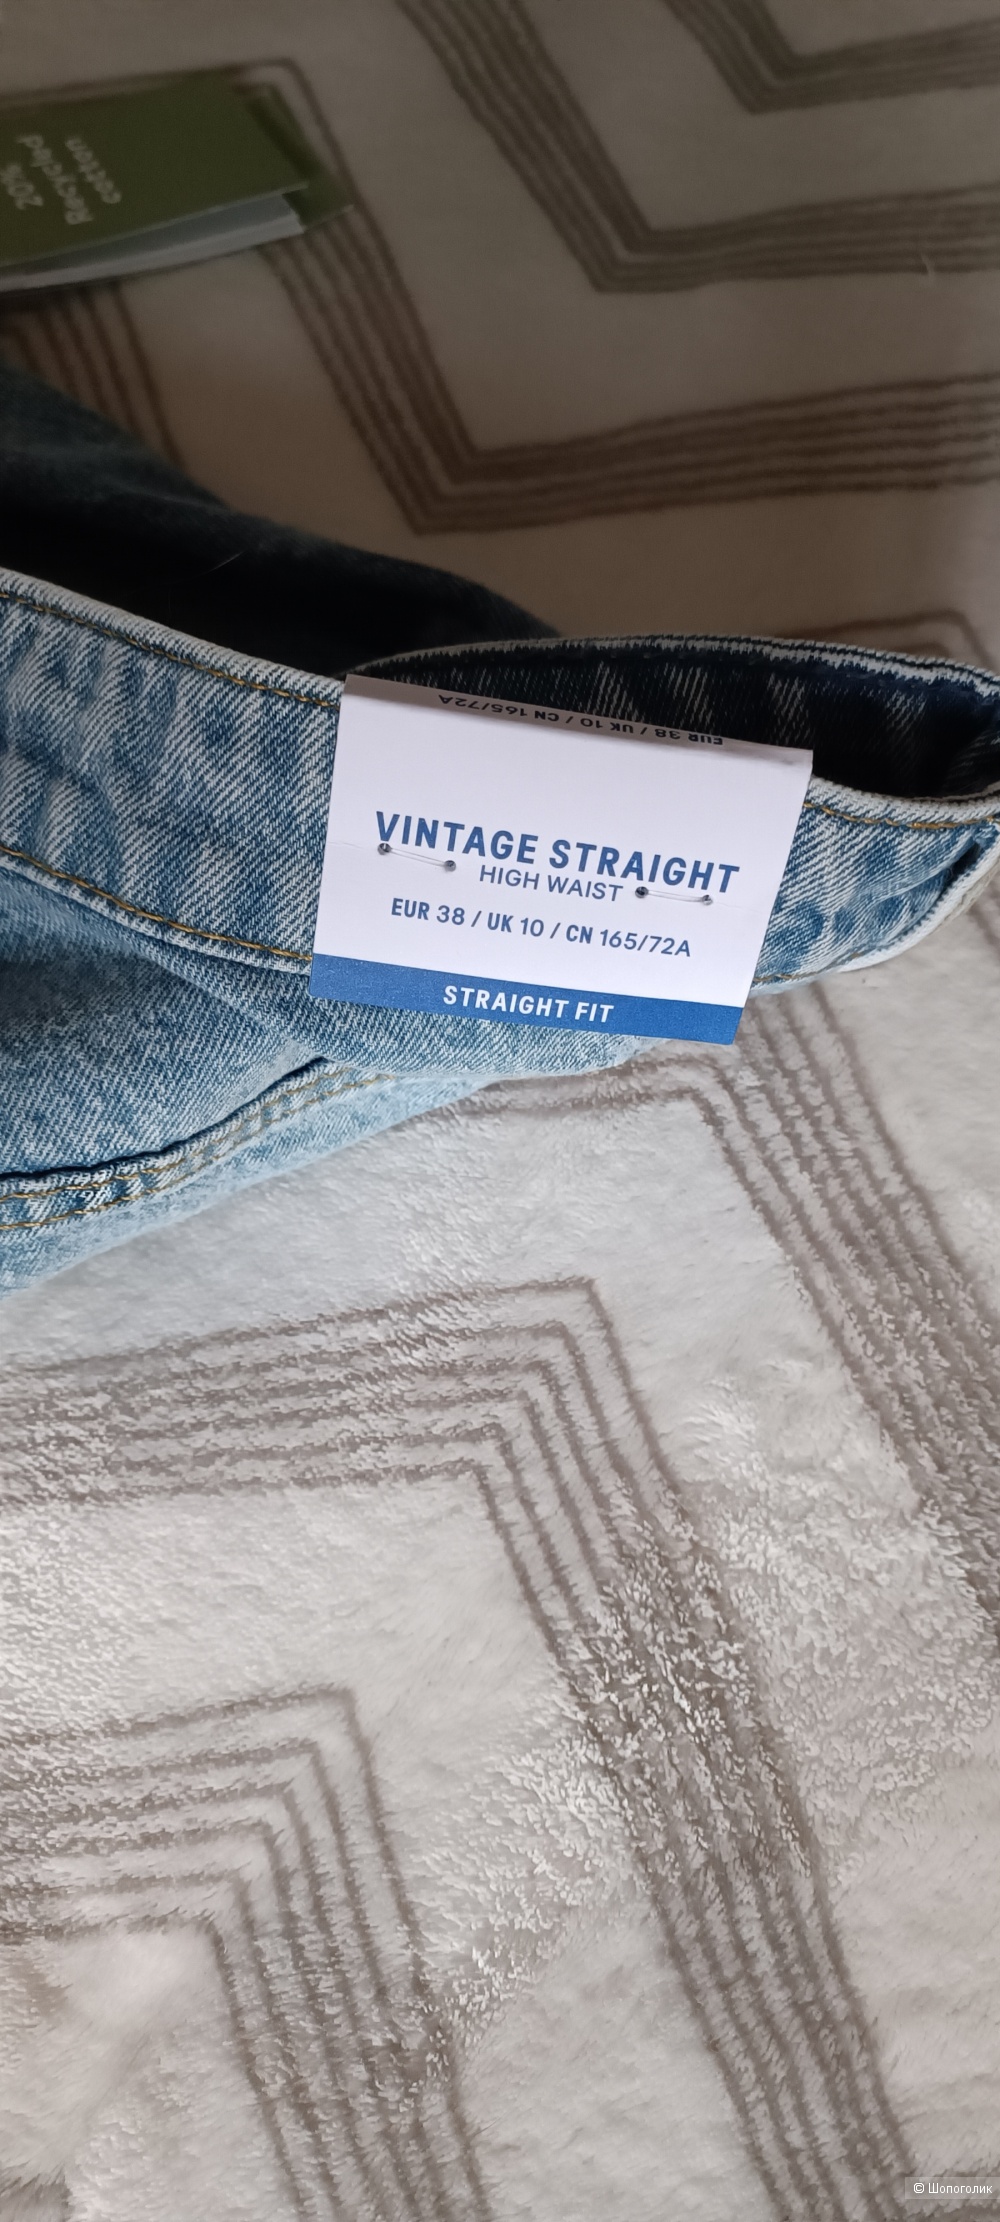 Джинсы H&M Vintage Straight, Eur.38